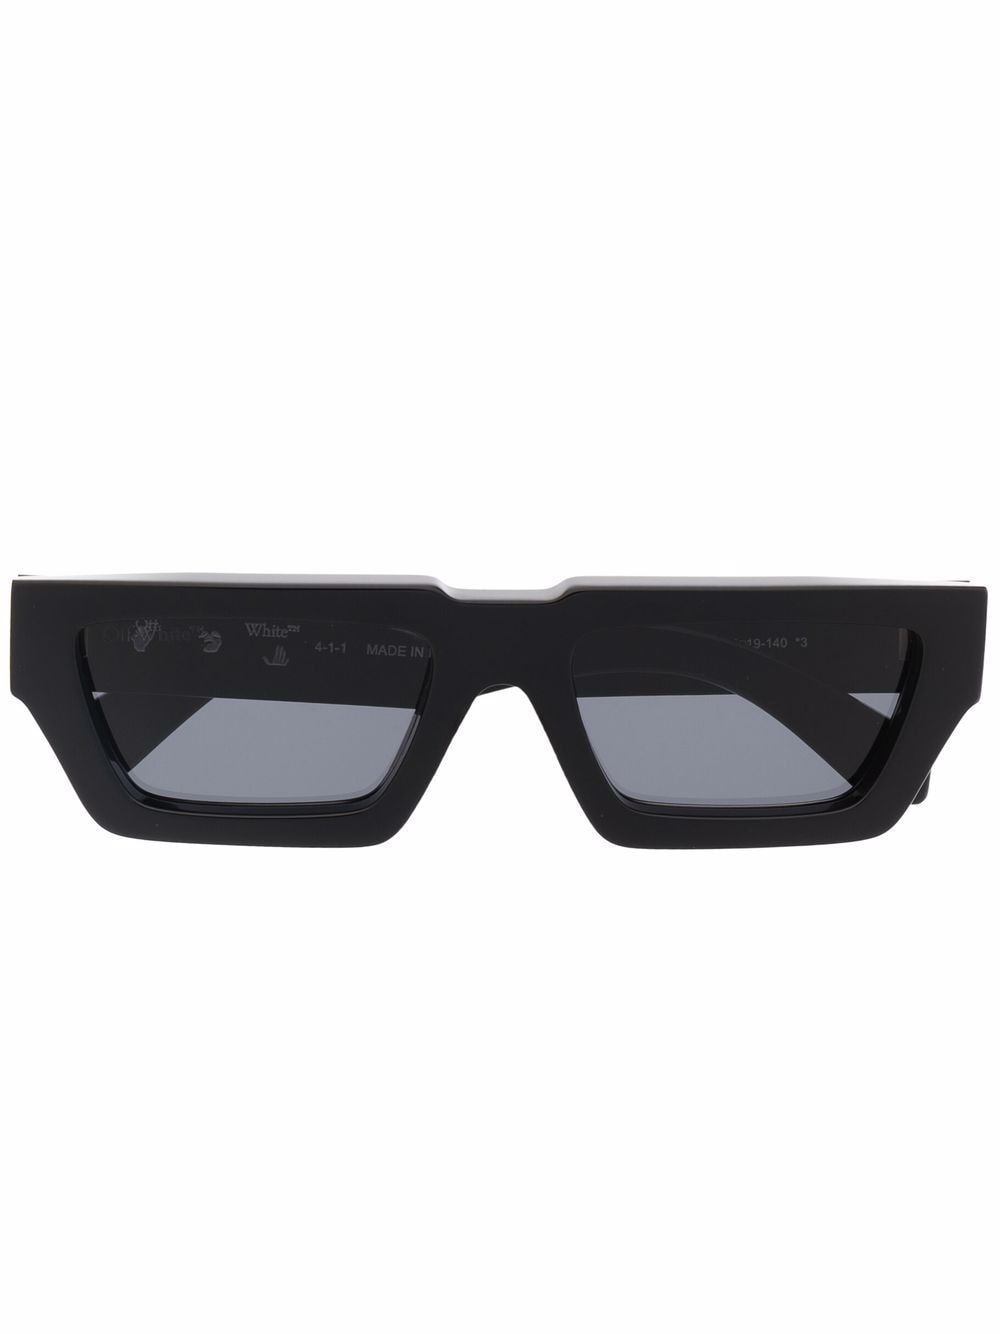 OFF-WHITE Manchester rectangular-frame sunglasses Black